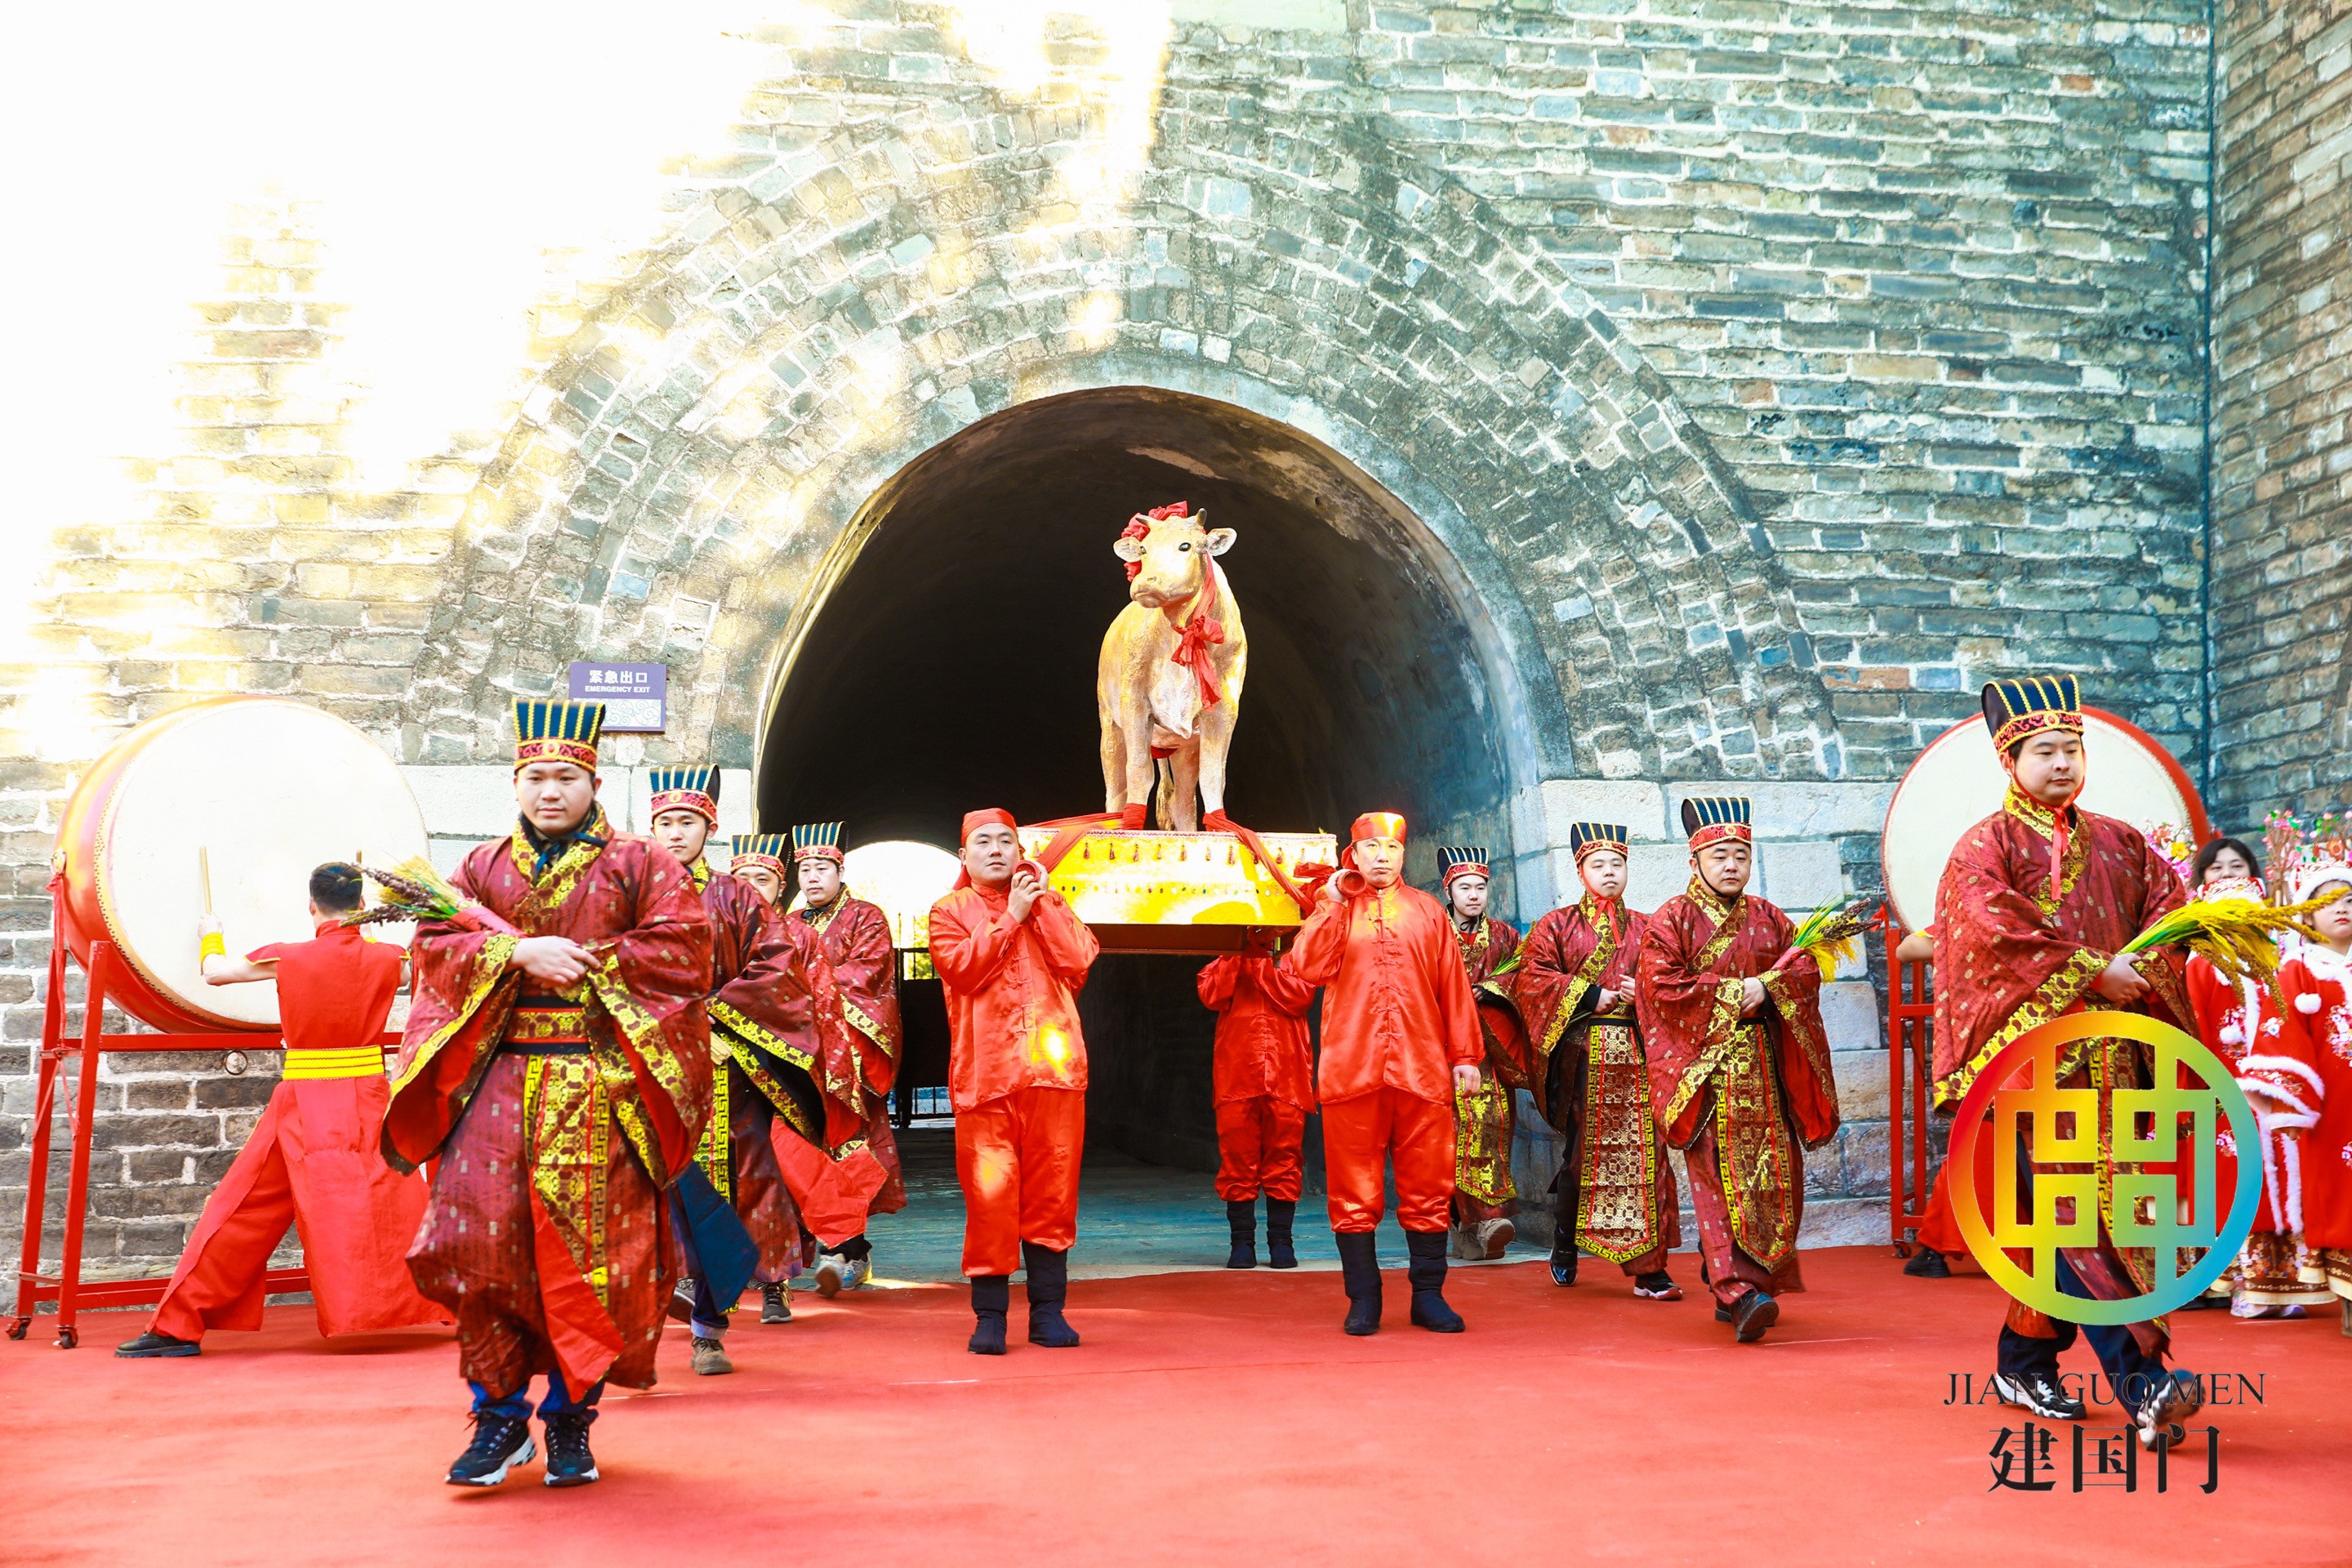 立春文化节重现建国门古观象台 联动中国移动线上直播送祝福